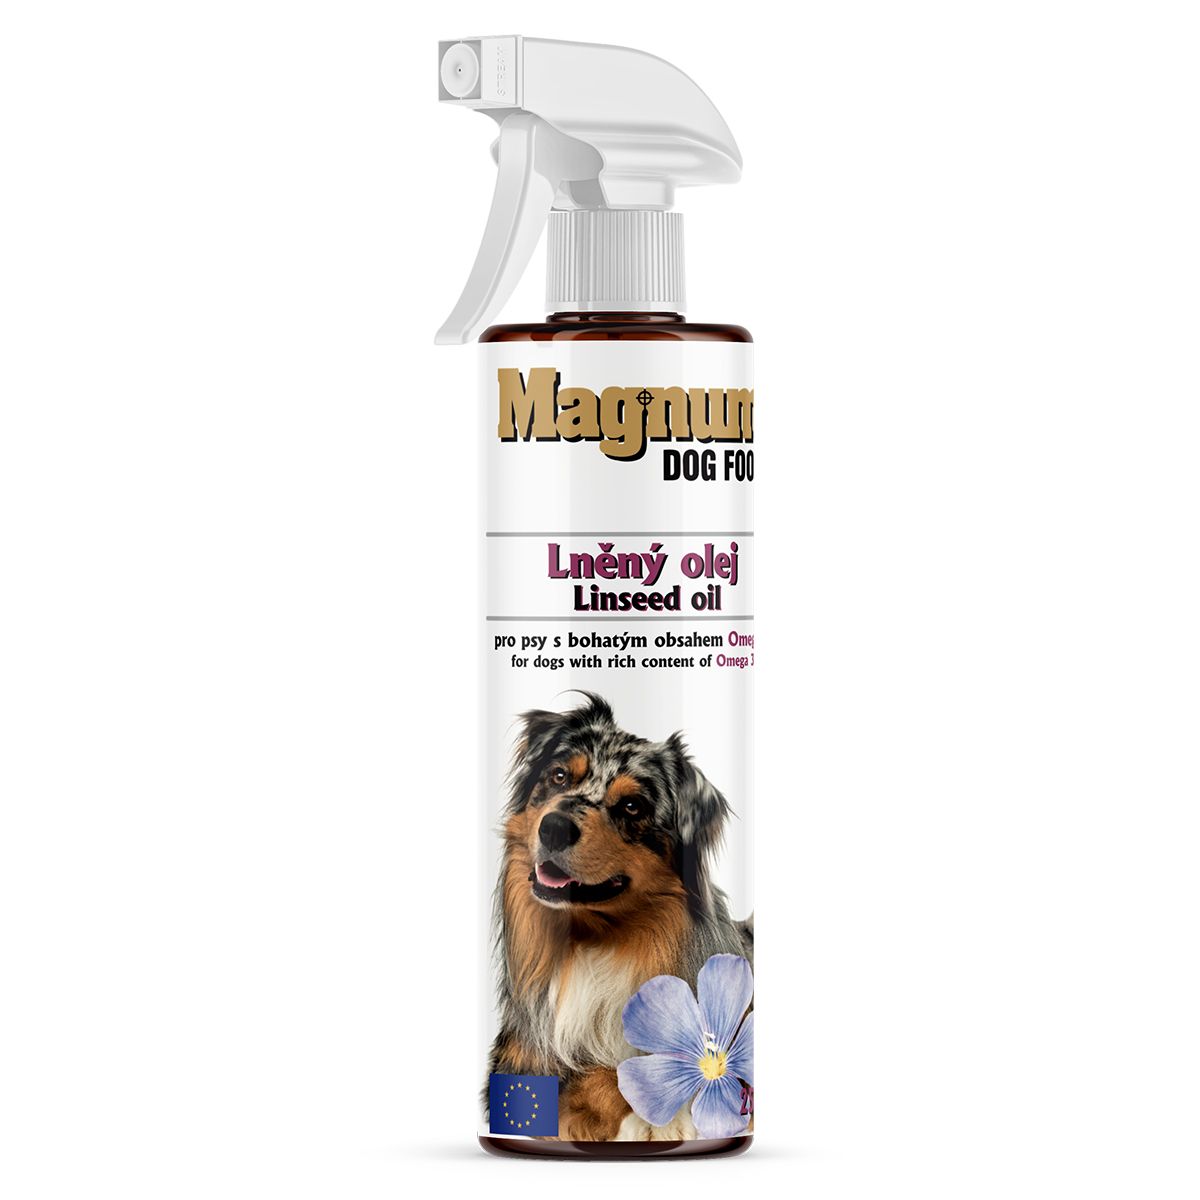 Magnum Lněný olej 250ml Magnum dog food